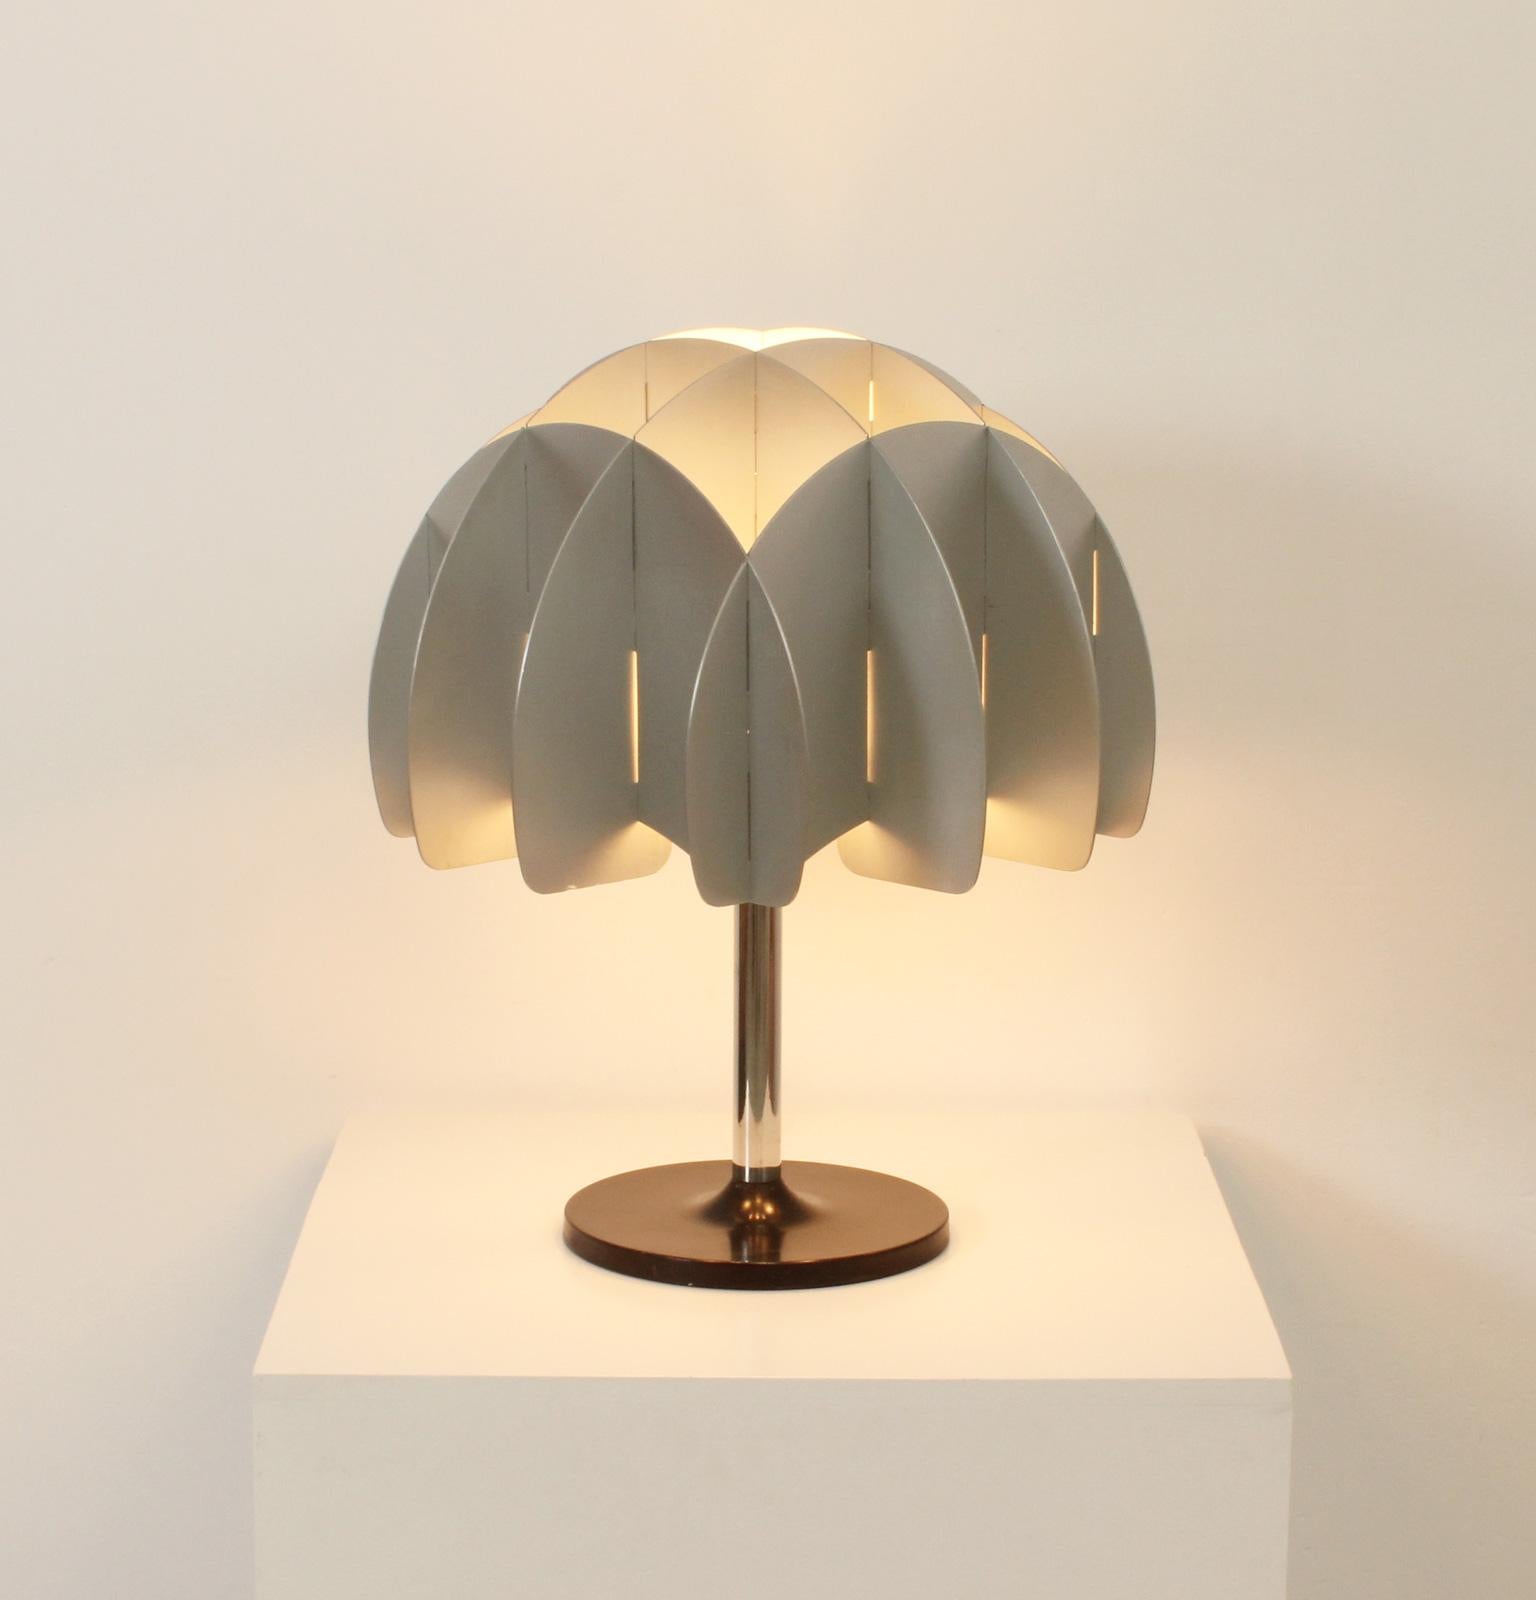 Lampe de table des années 1970 produite par Reggiani, Italie. Excellent travail réalisé avec des plaques d'aluminium en guise de dôme avec une base en métal chromé et laqué. 